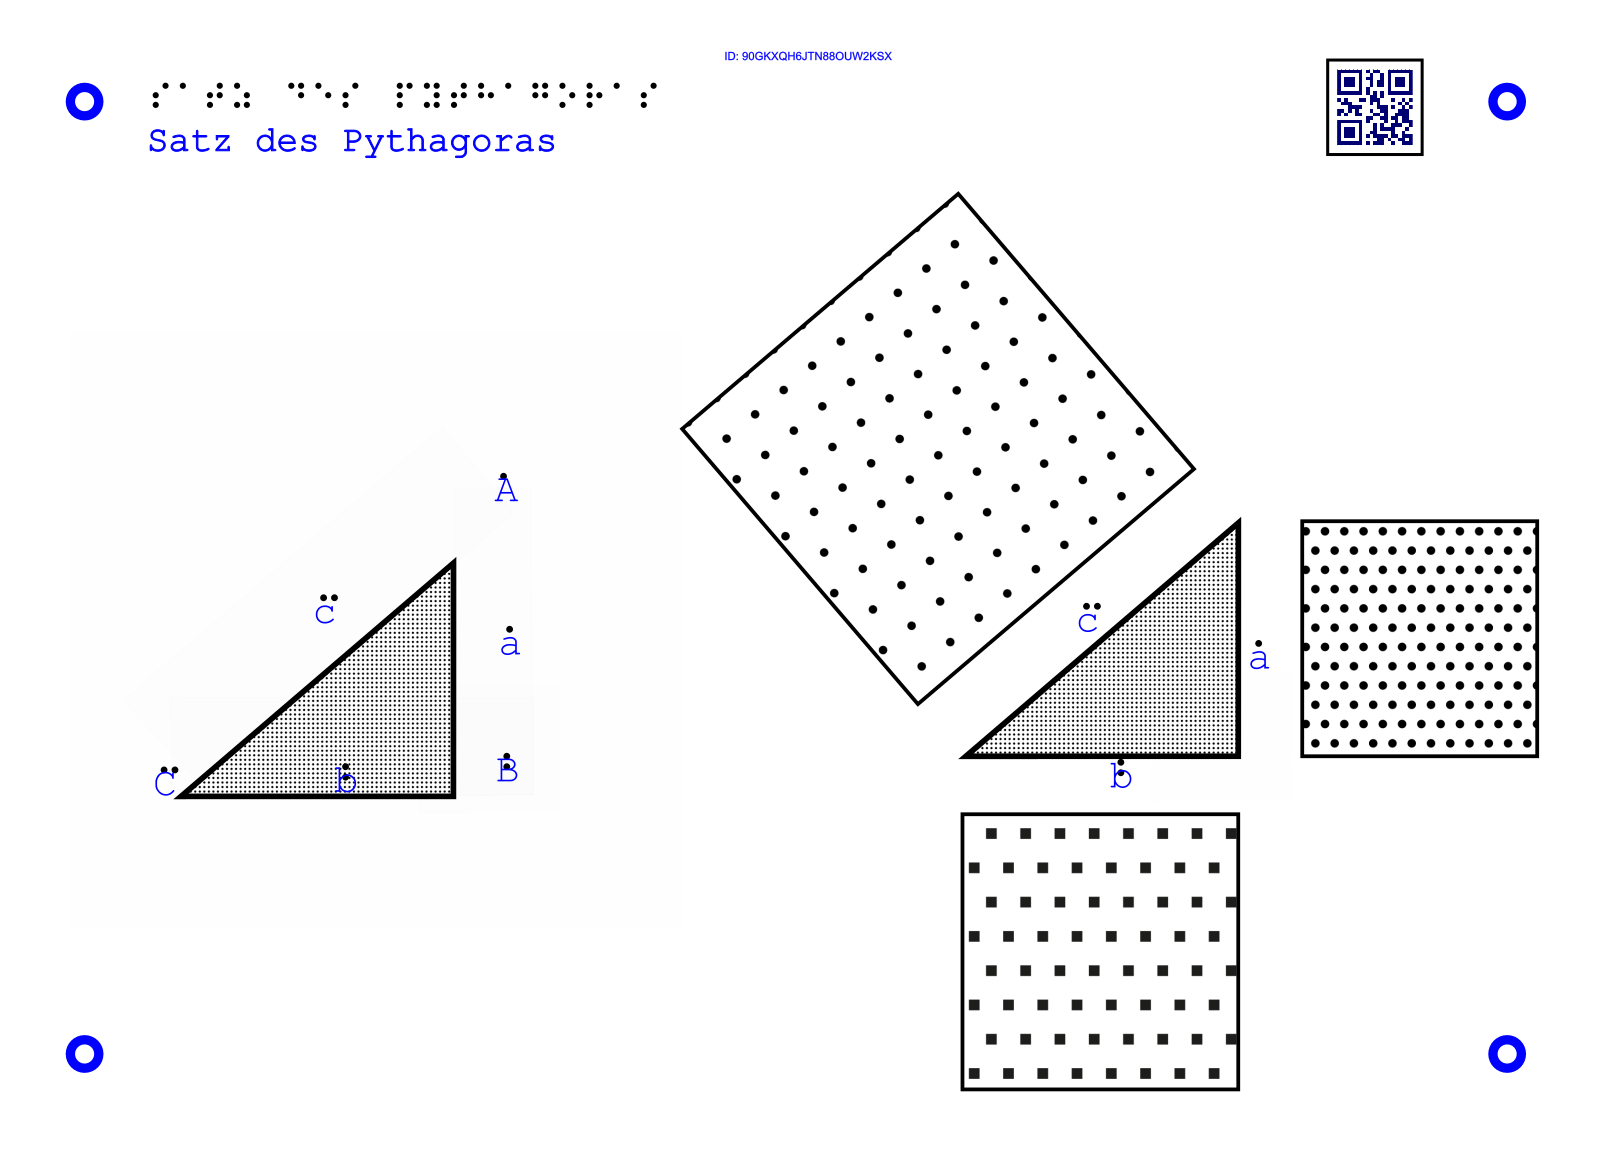 11Taktile Grafik, mit der man den Satz des Pythagoras erklärt bekommt.